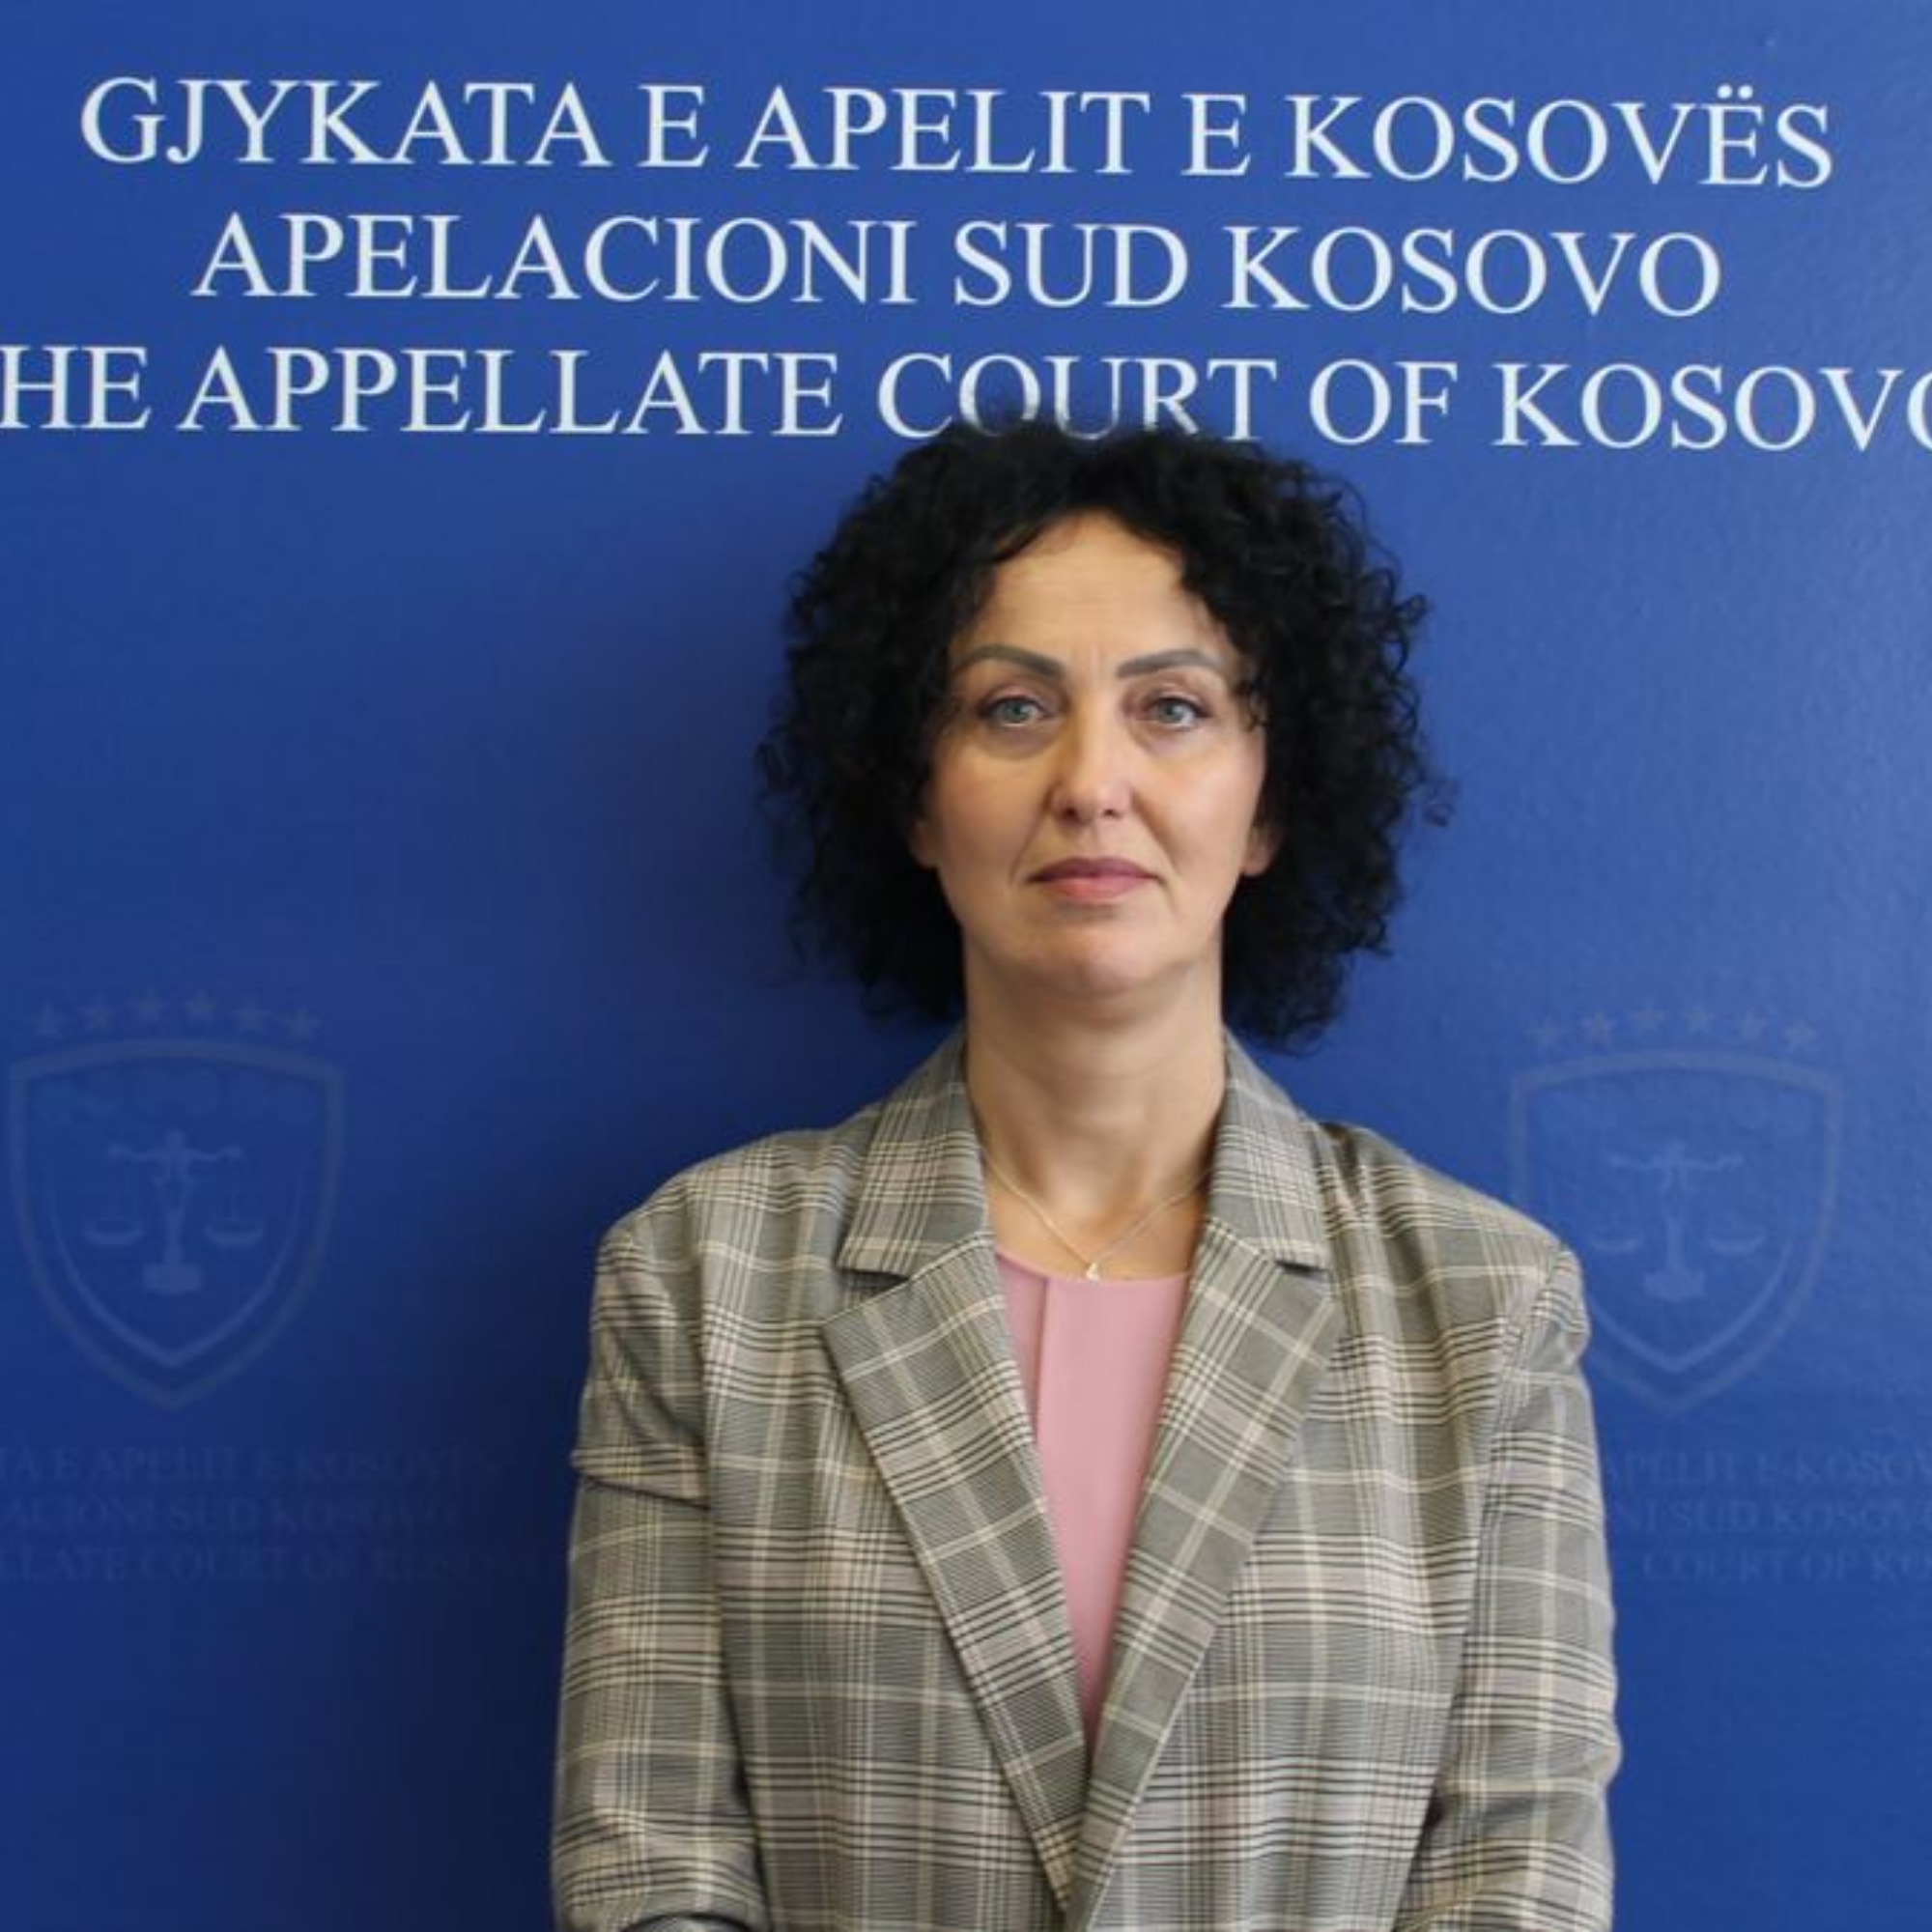 Milena Đerić se imenuje za potpredsednika Apelacionog suda